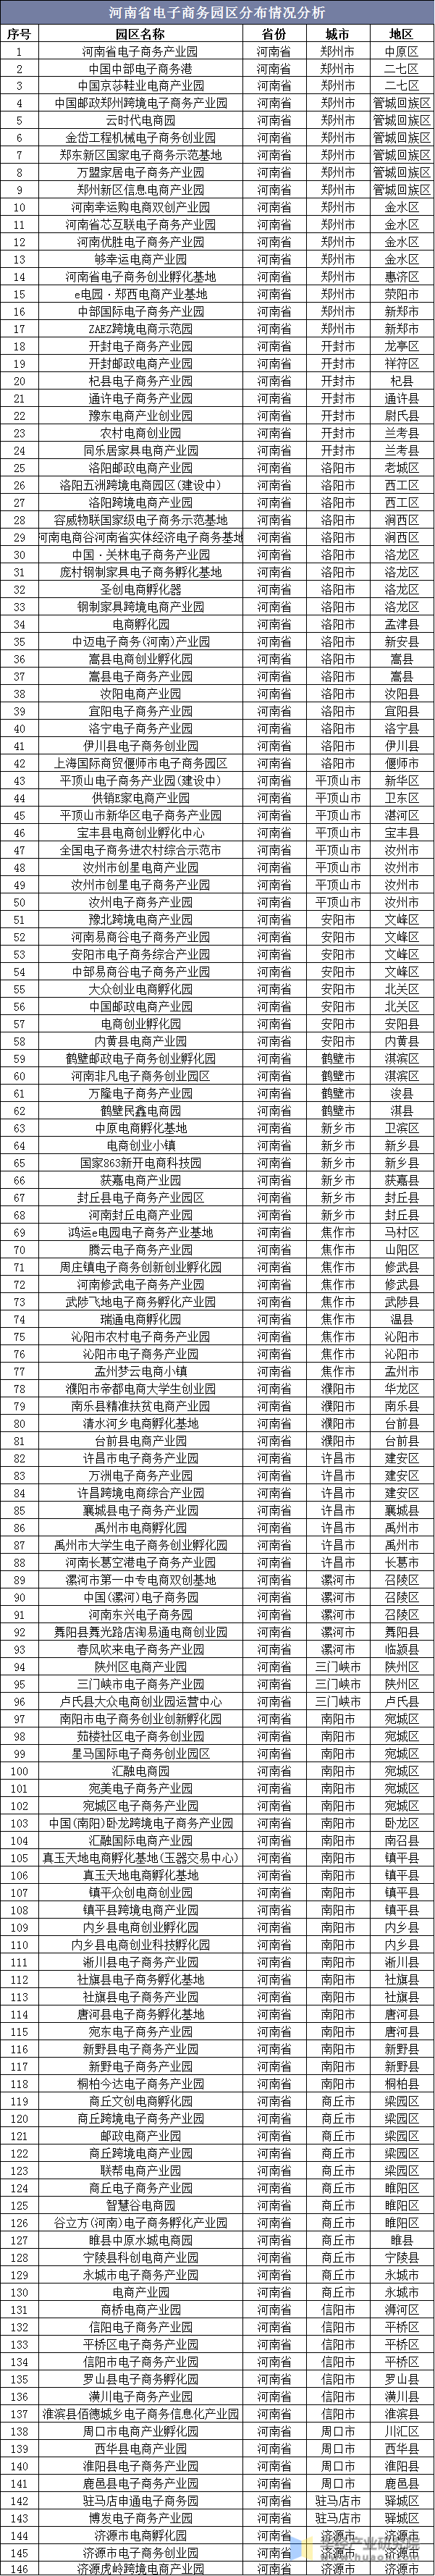 河南省电子商务园区分布情况分析